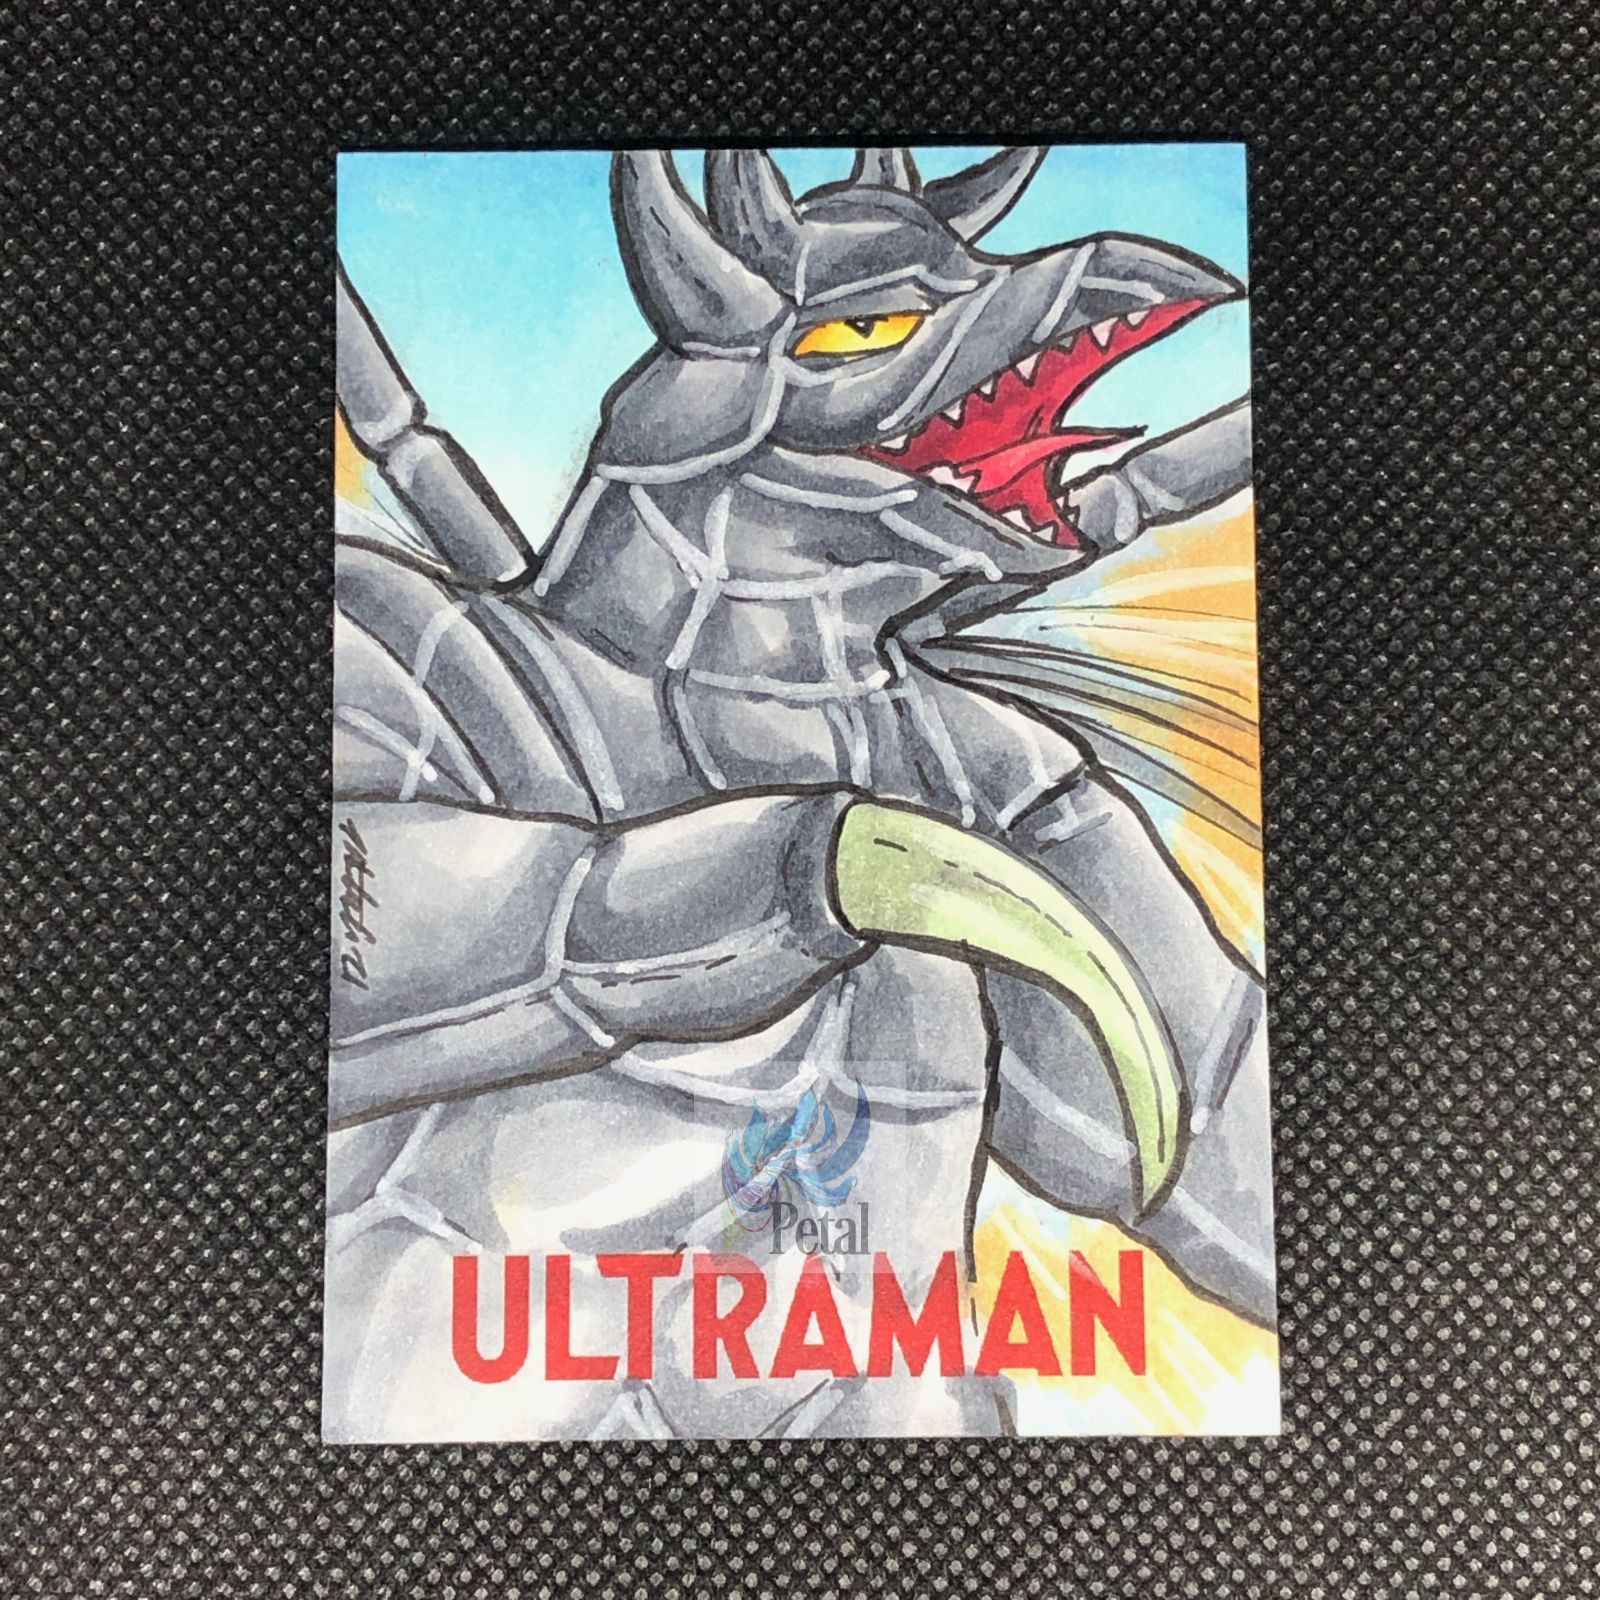 ULTウルトラマン　スケッチカード